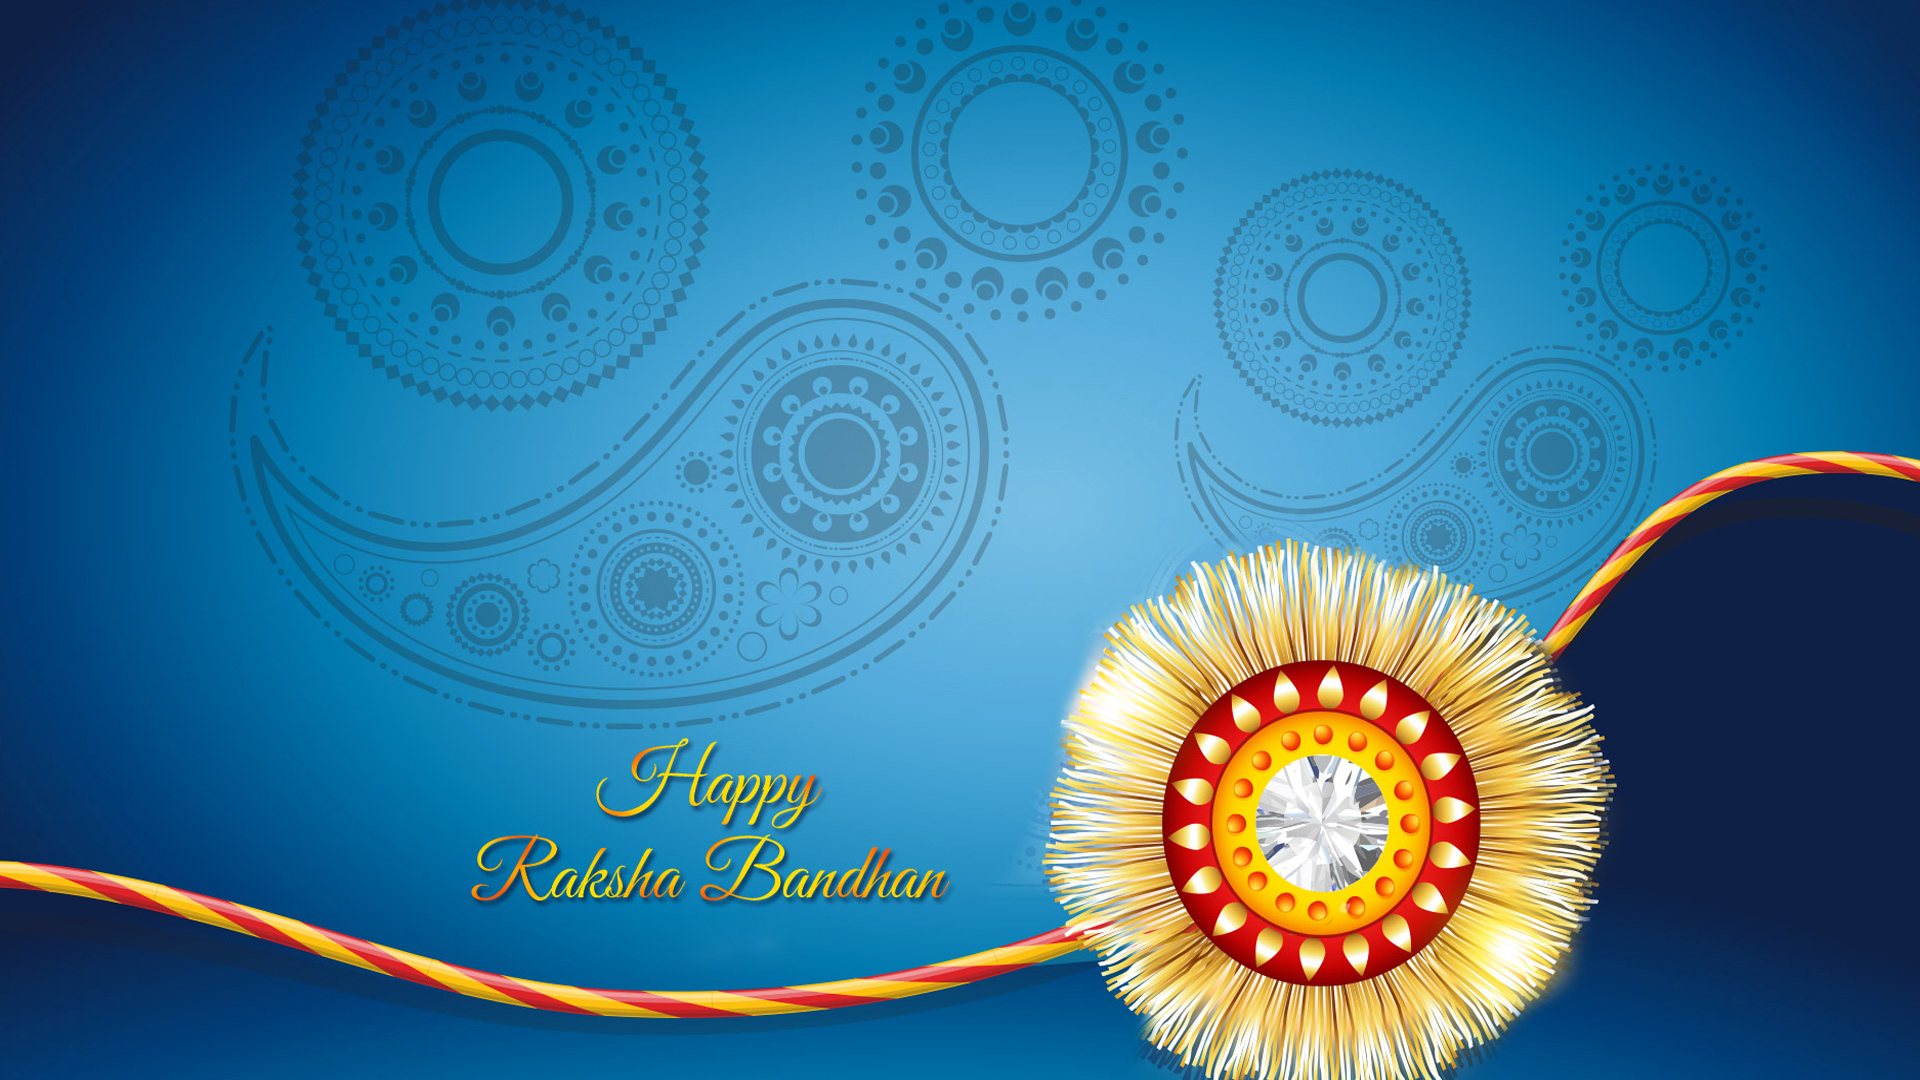 fond d'écran rakhi,illustration,police de caractère,conception graphique,cercle,diwali